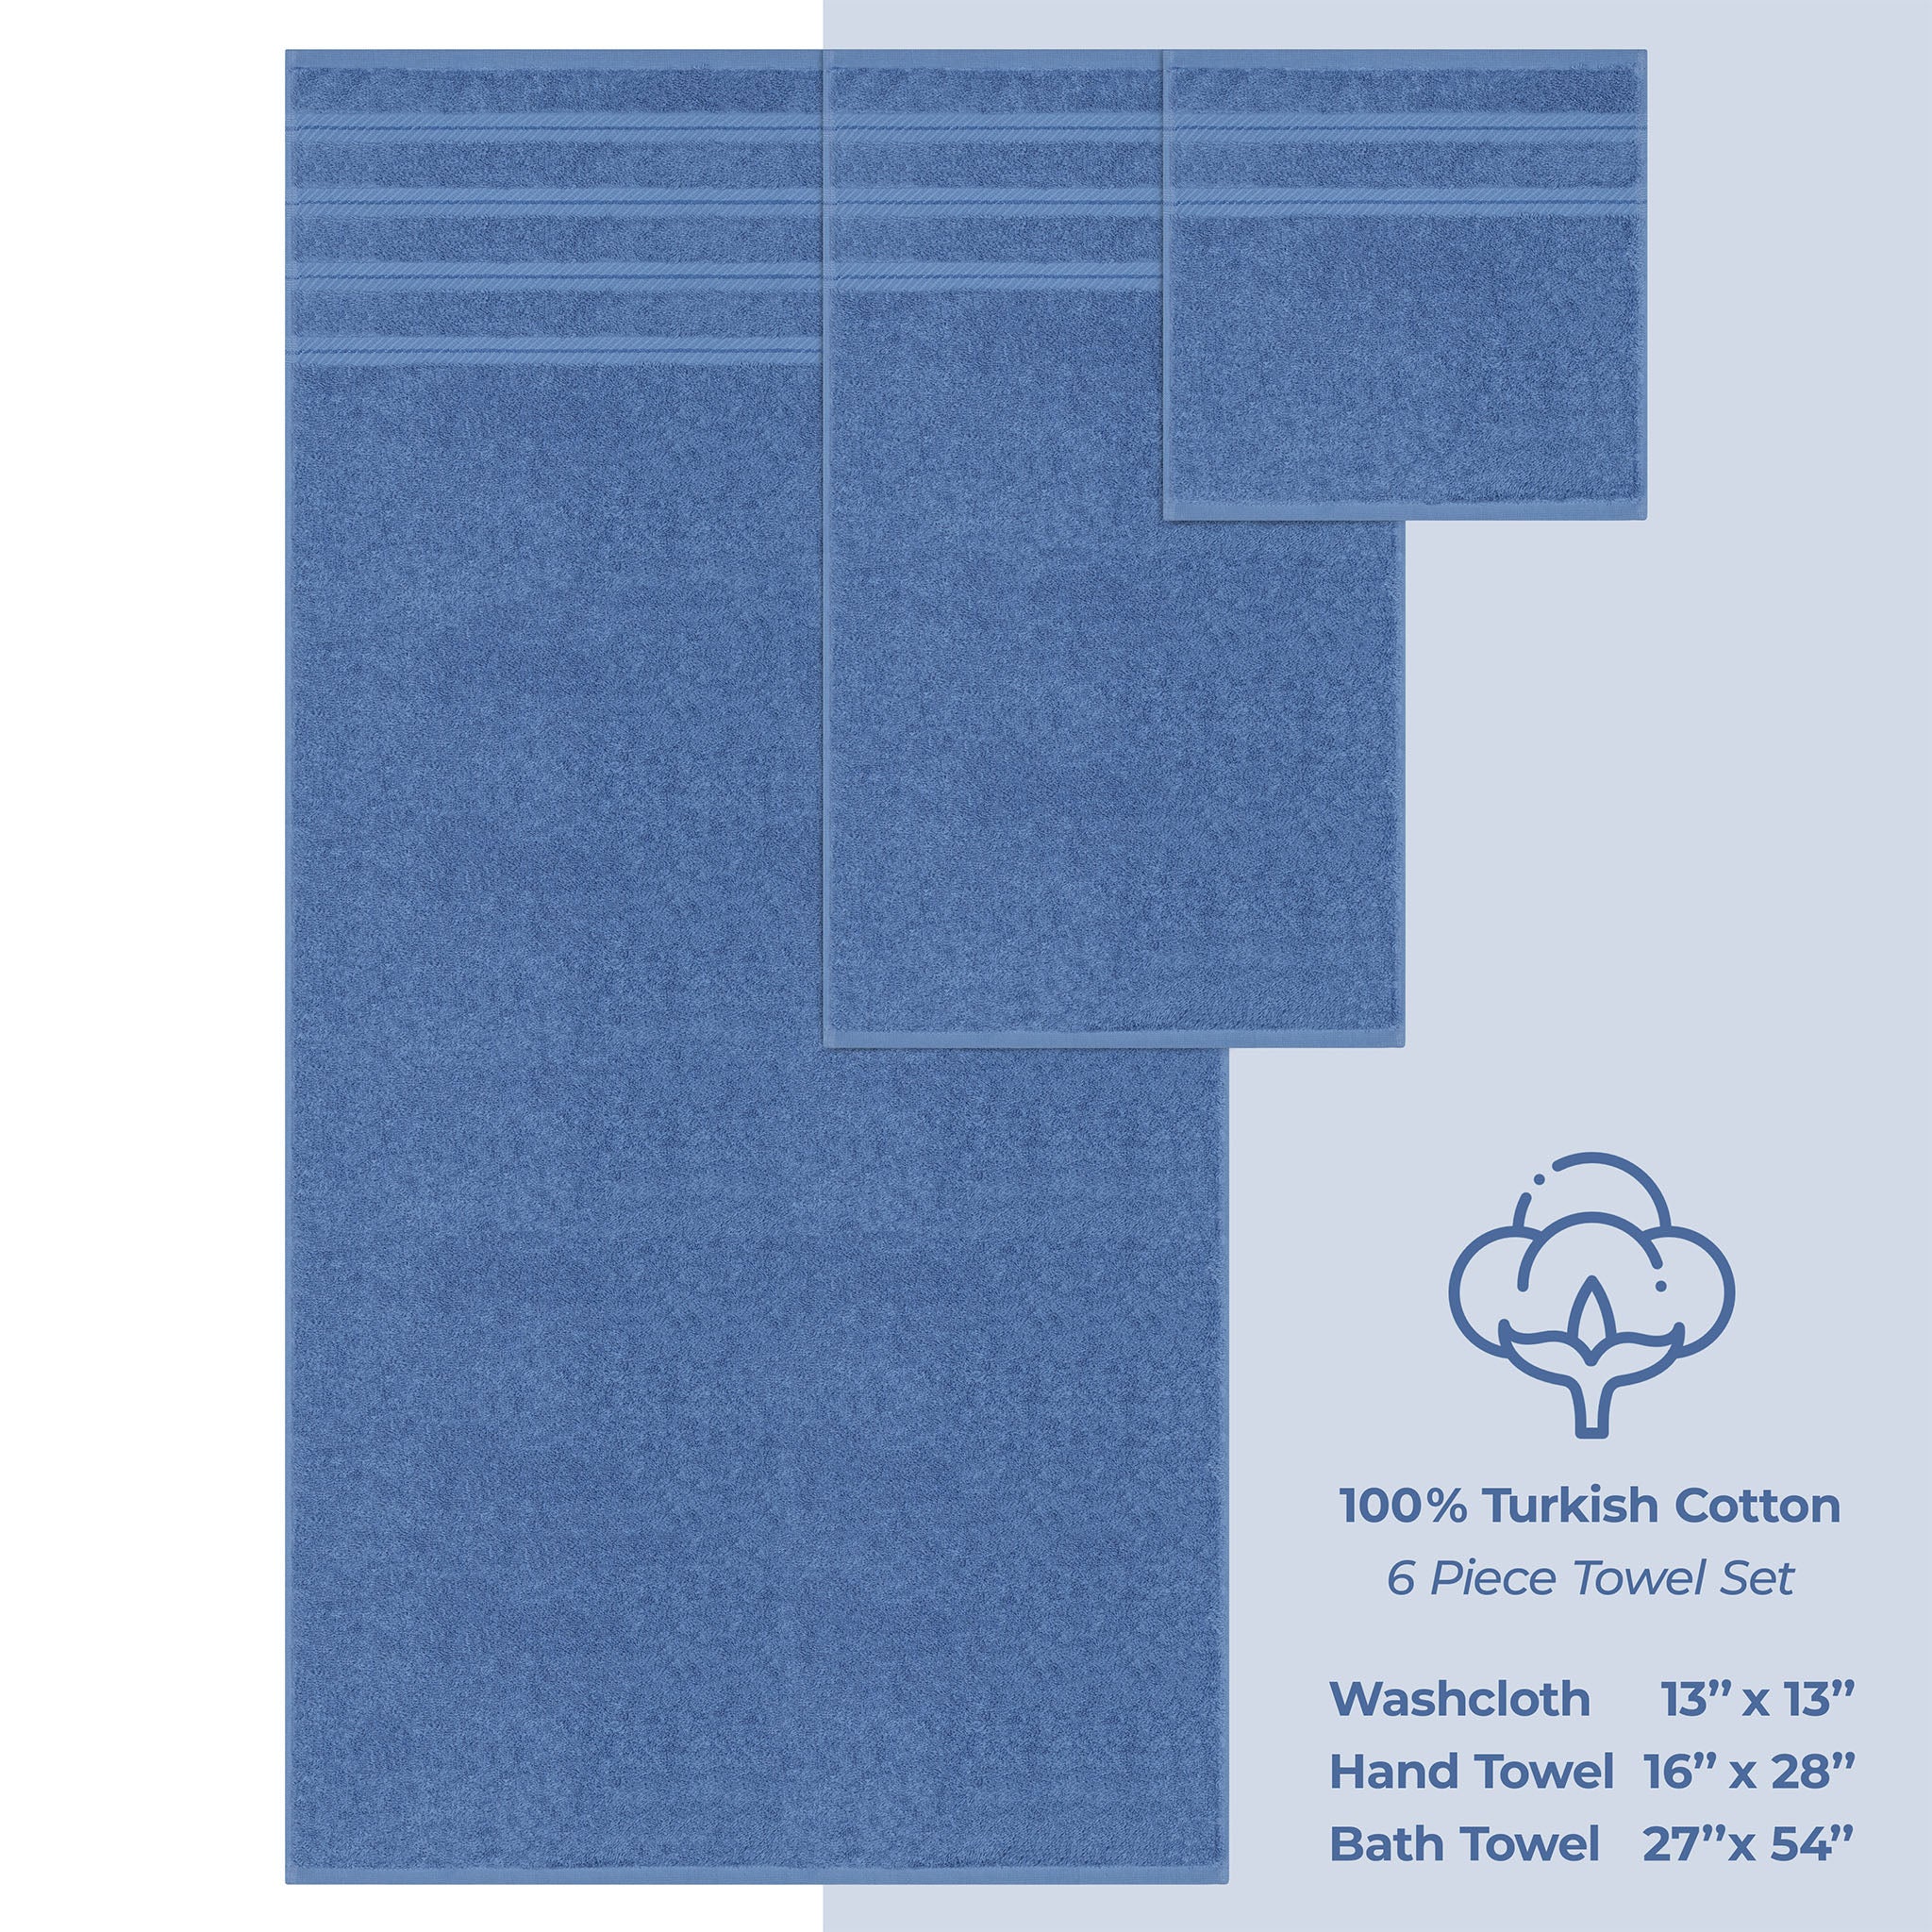 American Soft Linen 100% Turkish Cotton 6 Piece Towel Set Wholesale electric-blue-4